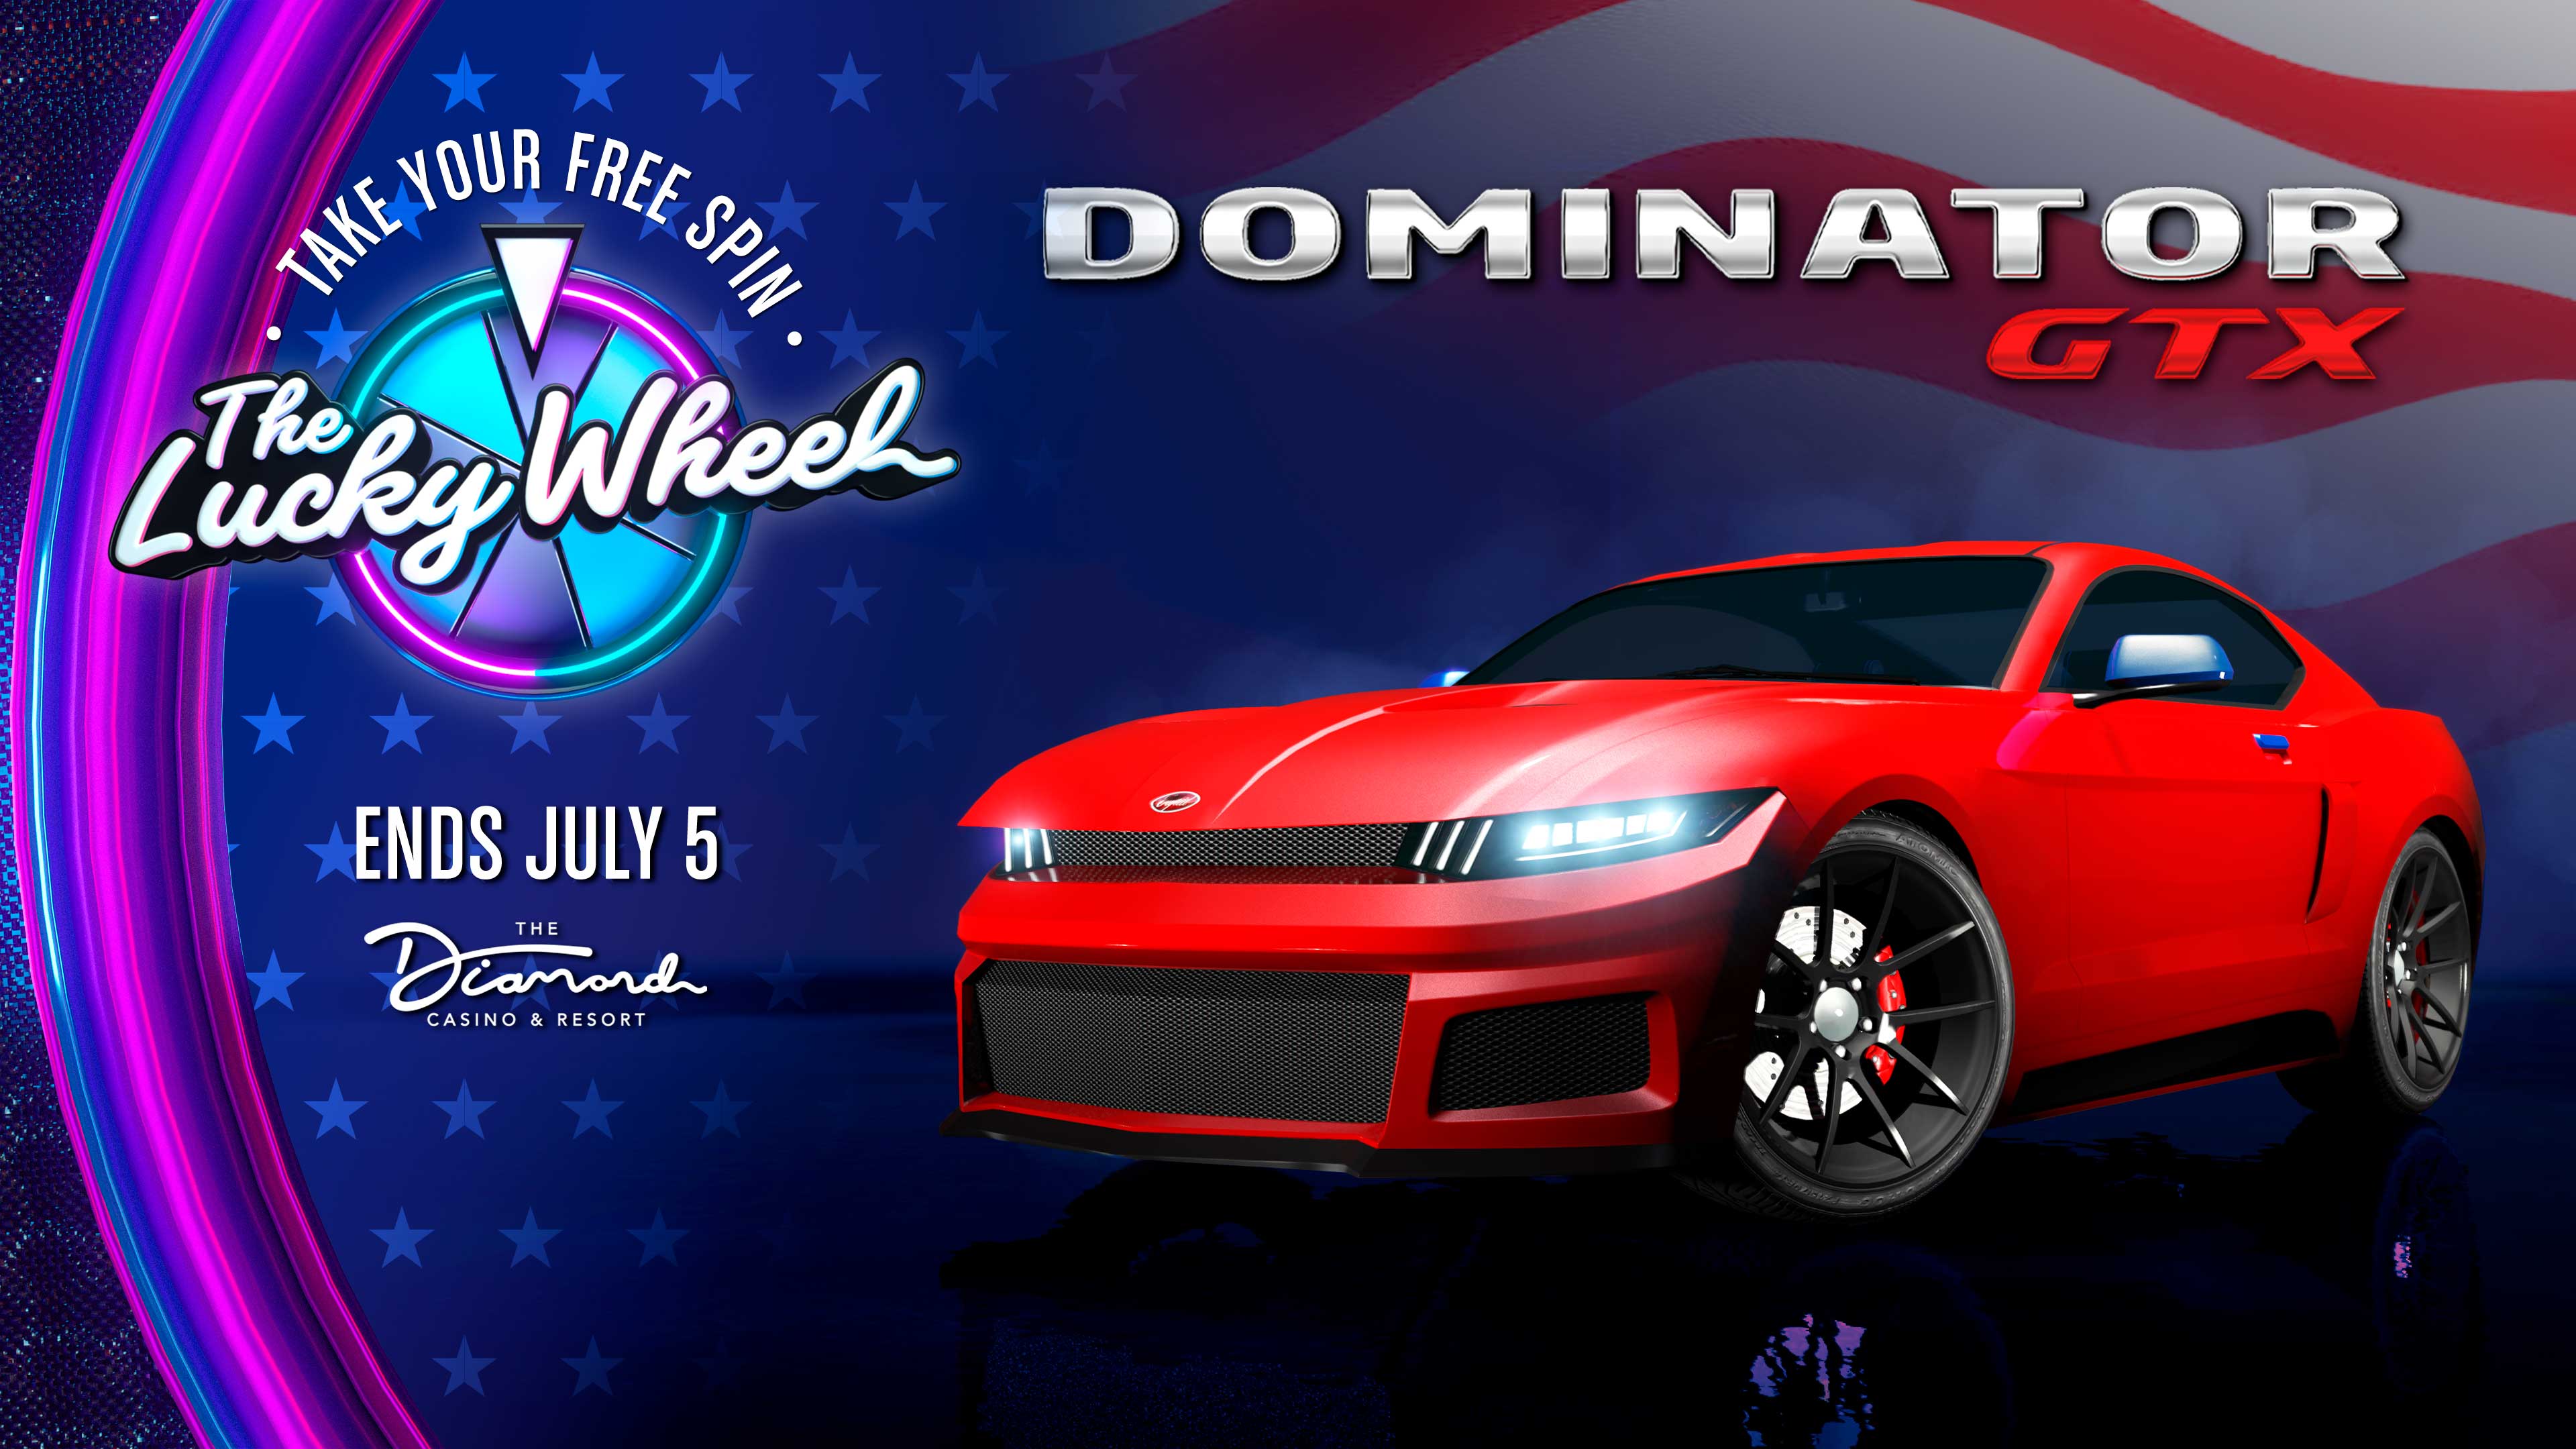 logo Dominator GTX e auto con la promozione della ruota fortunata